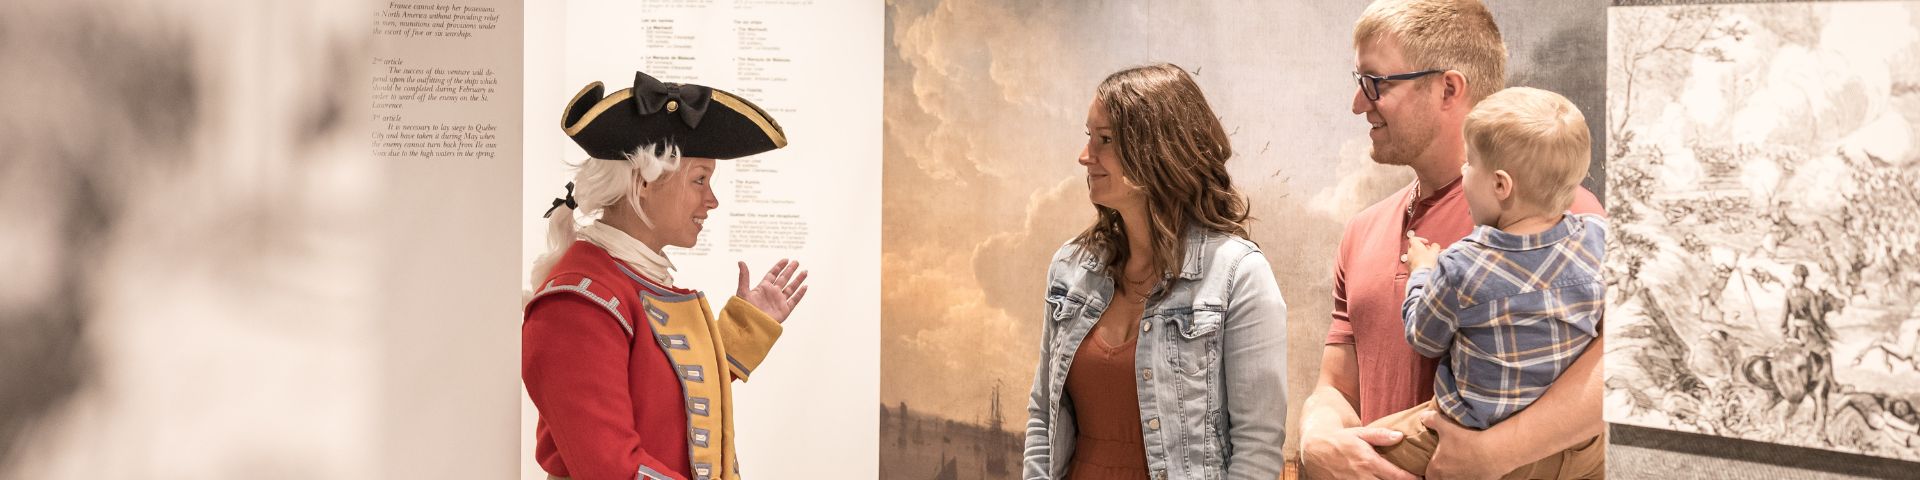 Une guide interprète personnifiant un militaire anglais parle à une famille dans une exposition. 